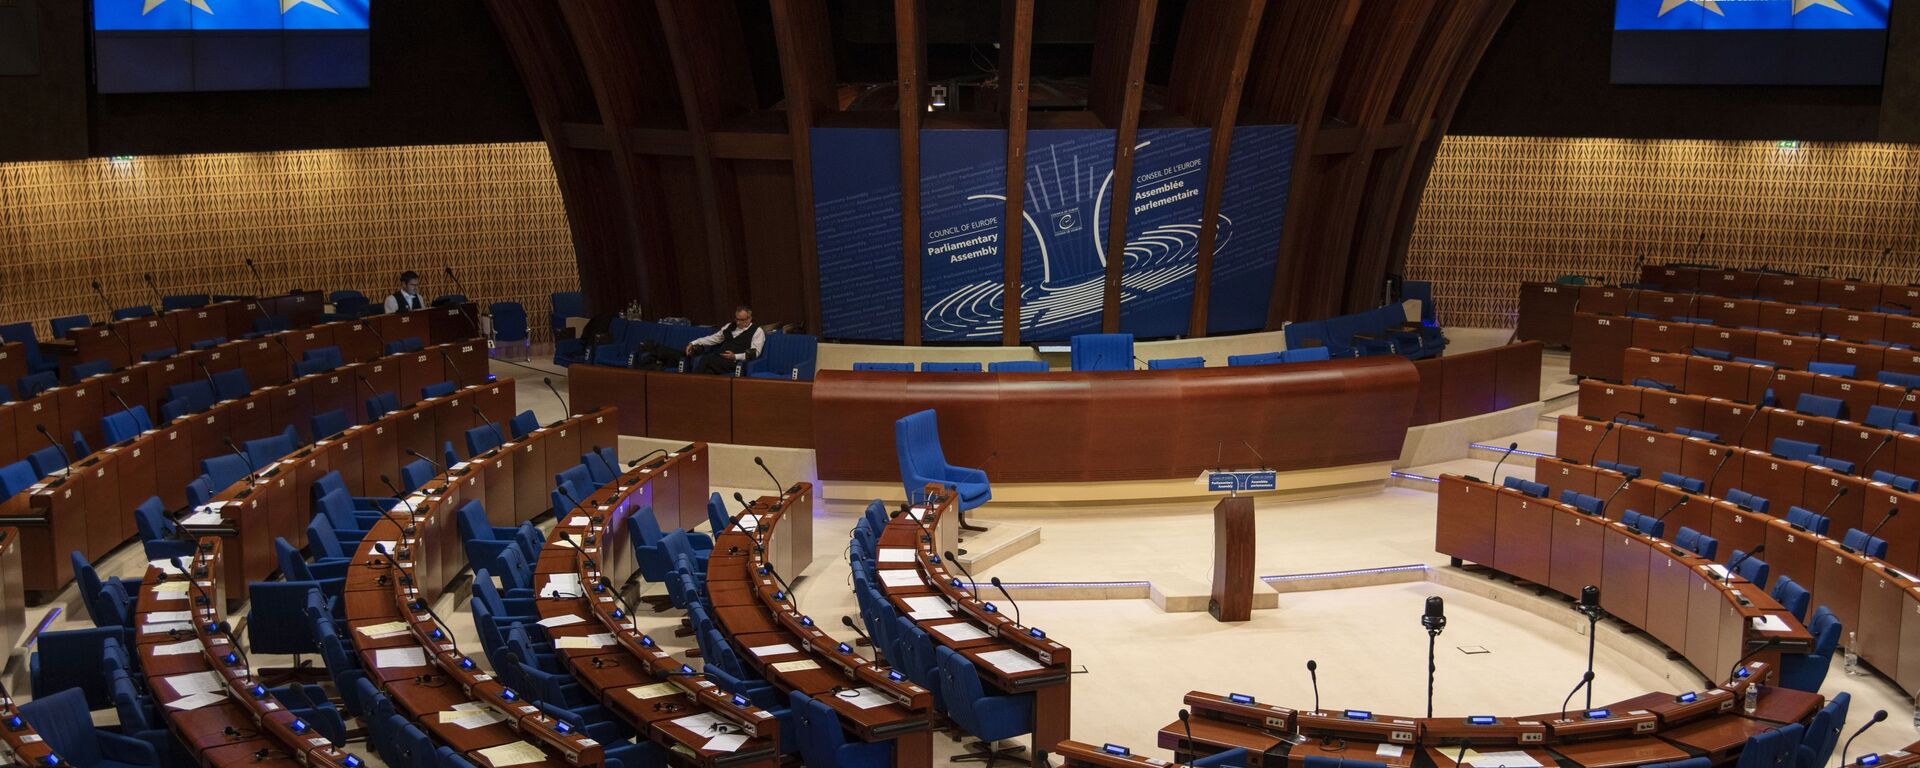 Зал заседания Парламентской ассамблеи Совета Европы  - Sputnik Грузия, 1920, 15.01.2021